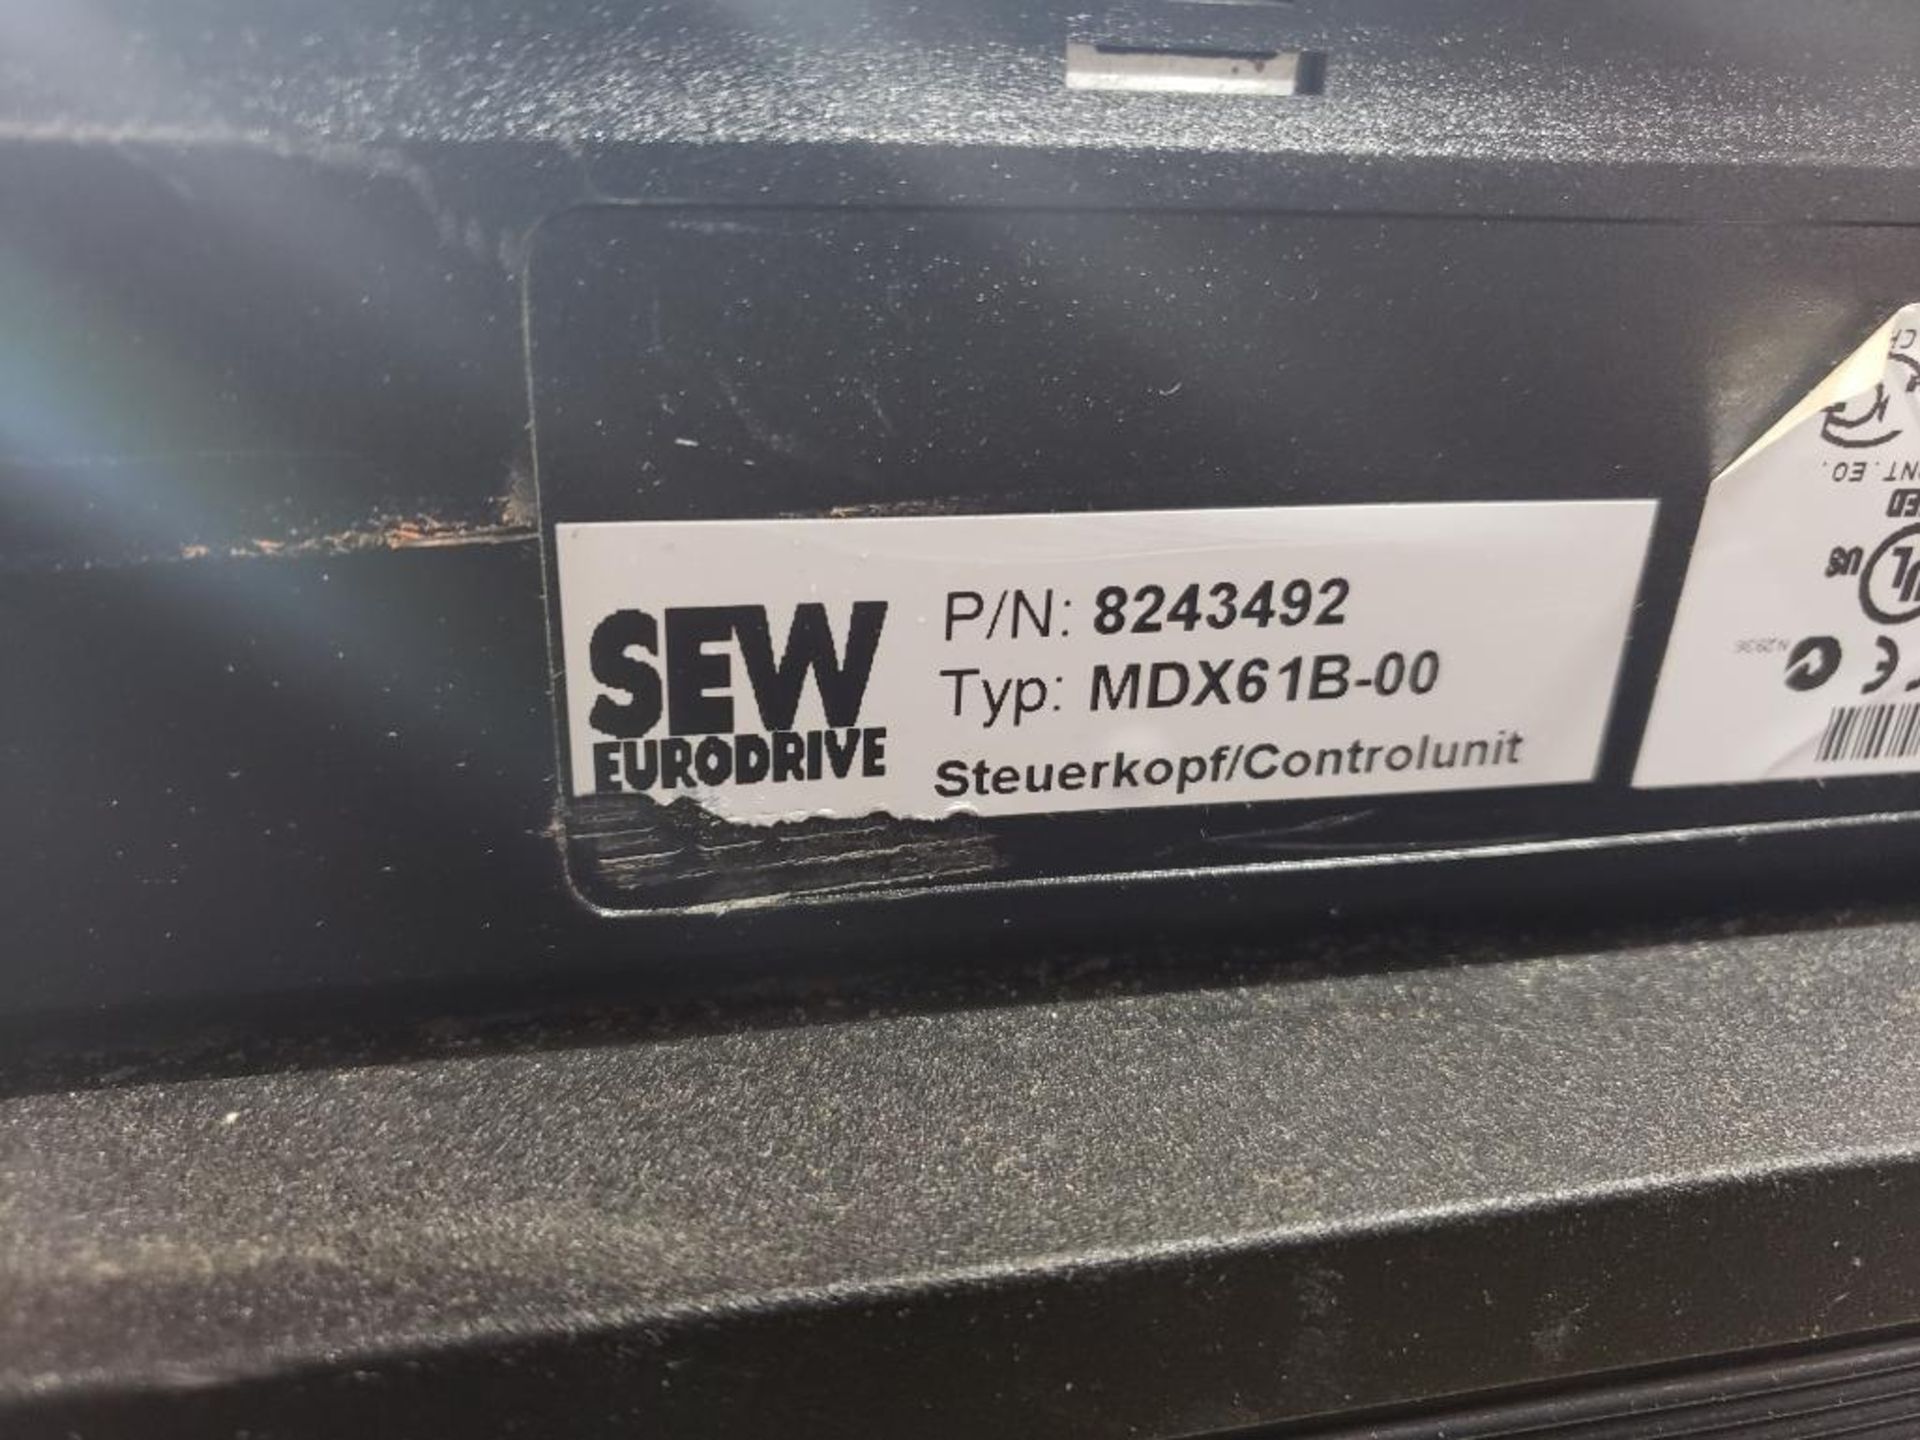 Sew Eurodrive MDX61B-00 servo drive control unit. - Image 6 of 9